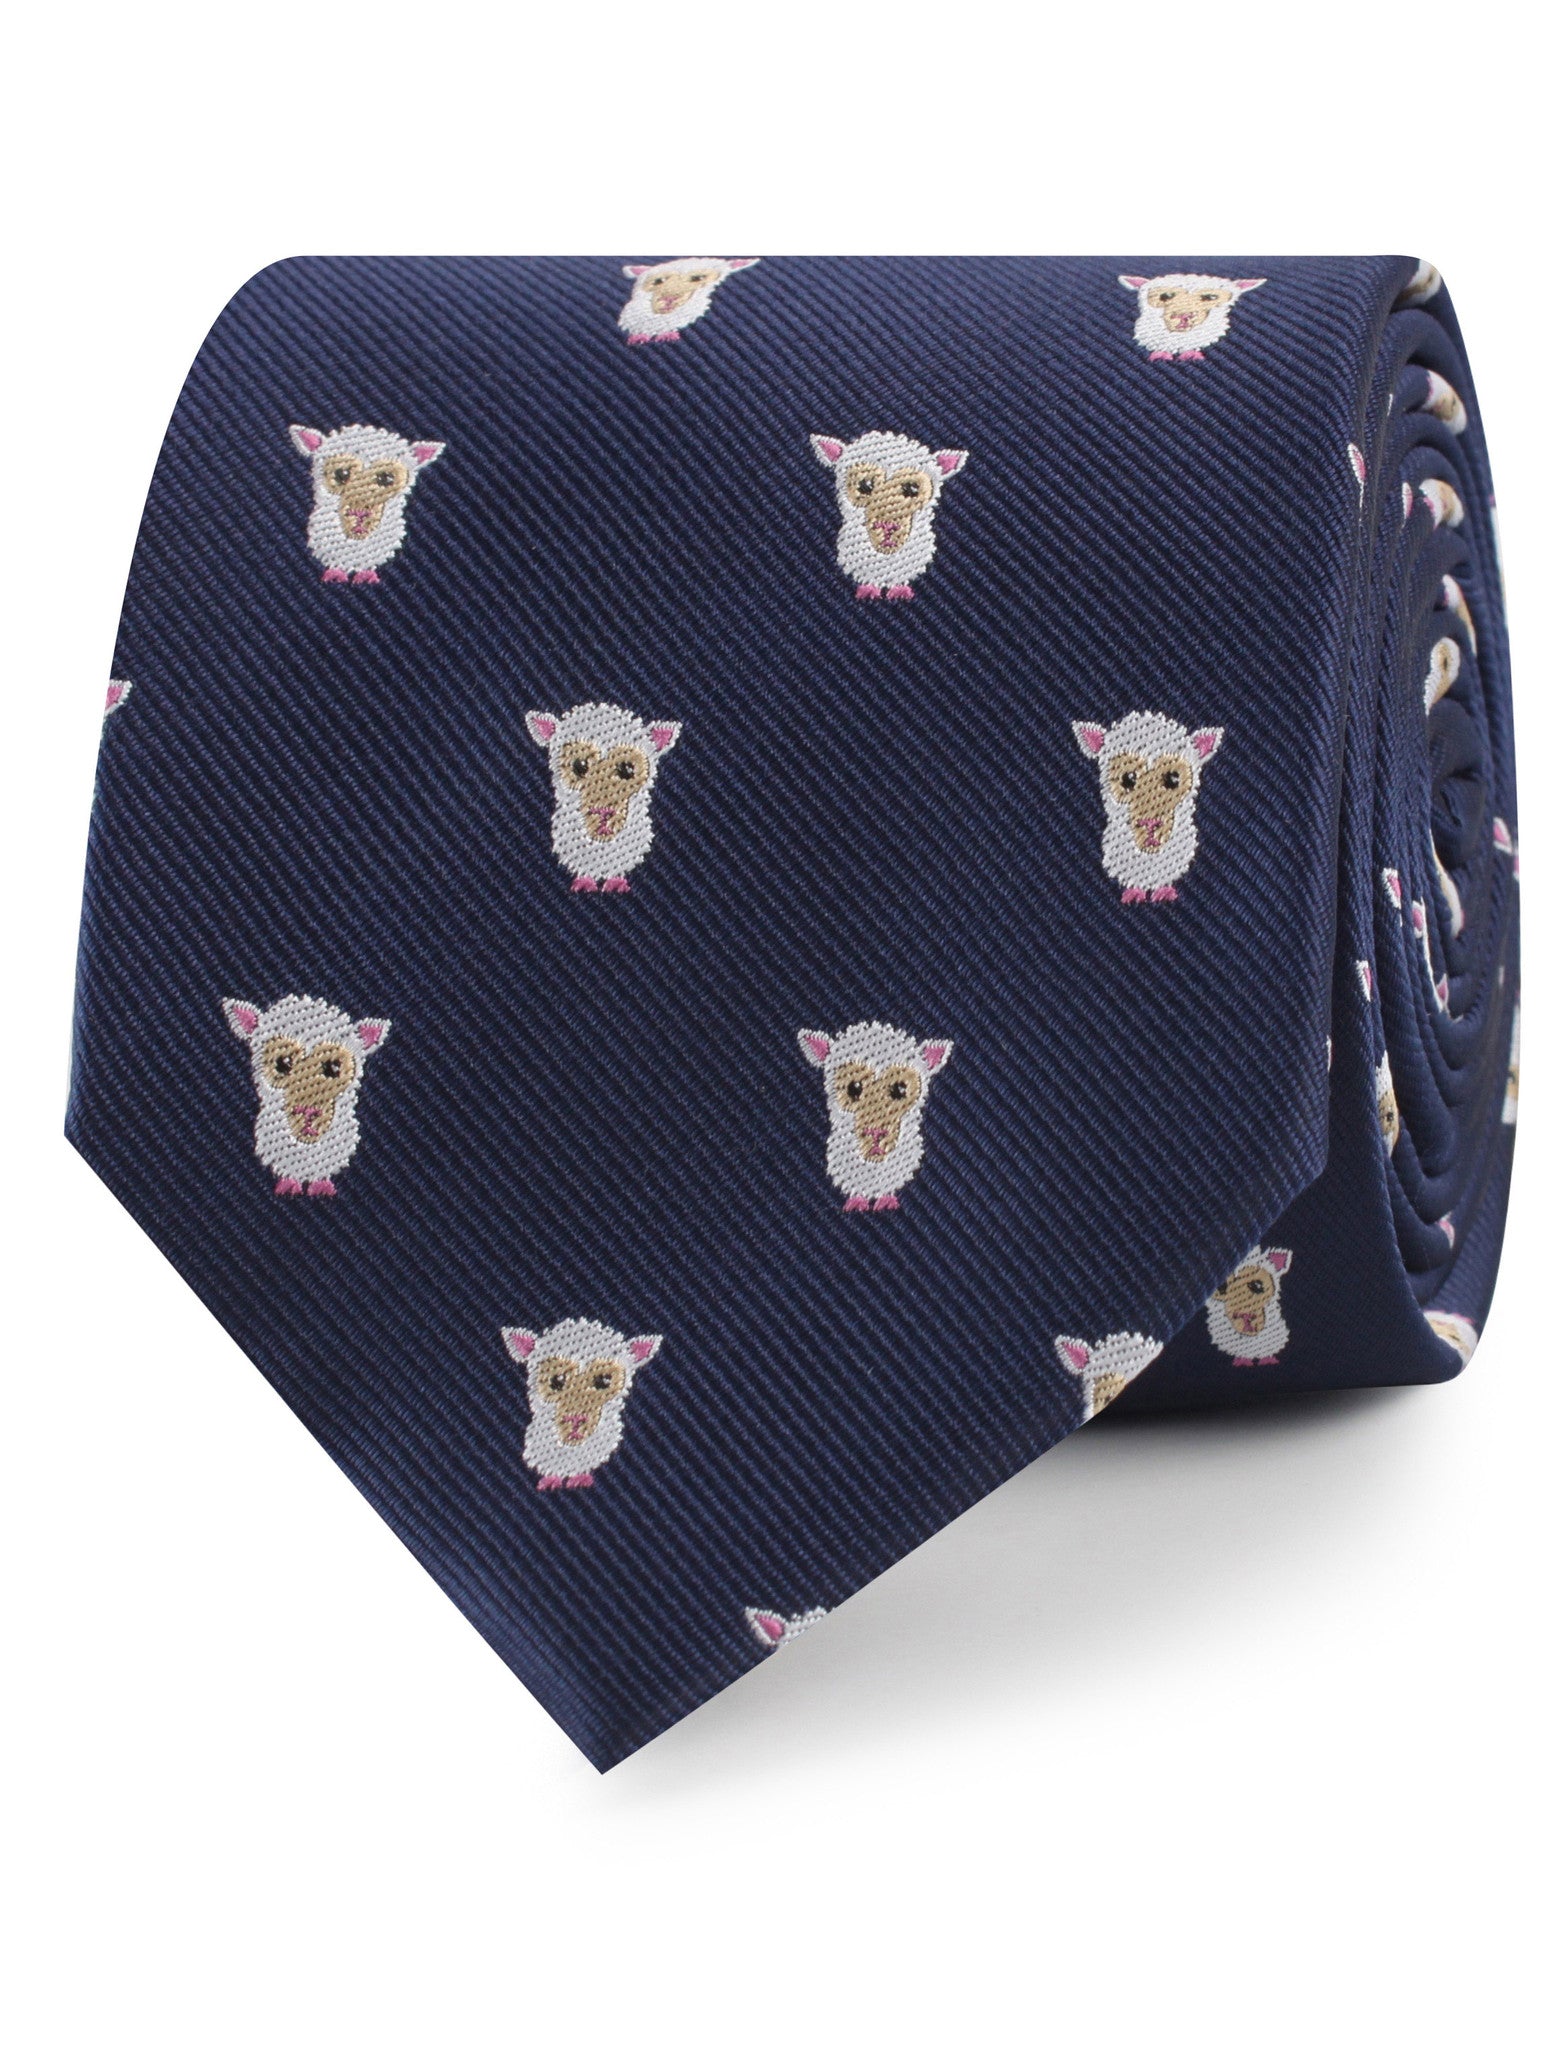 White Sheep Necktie